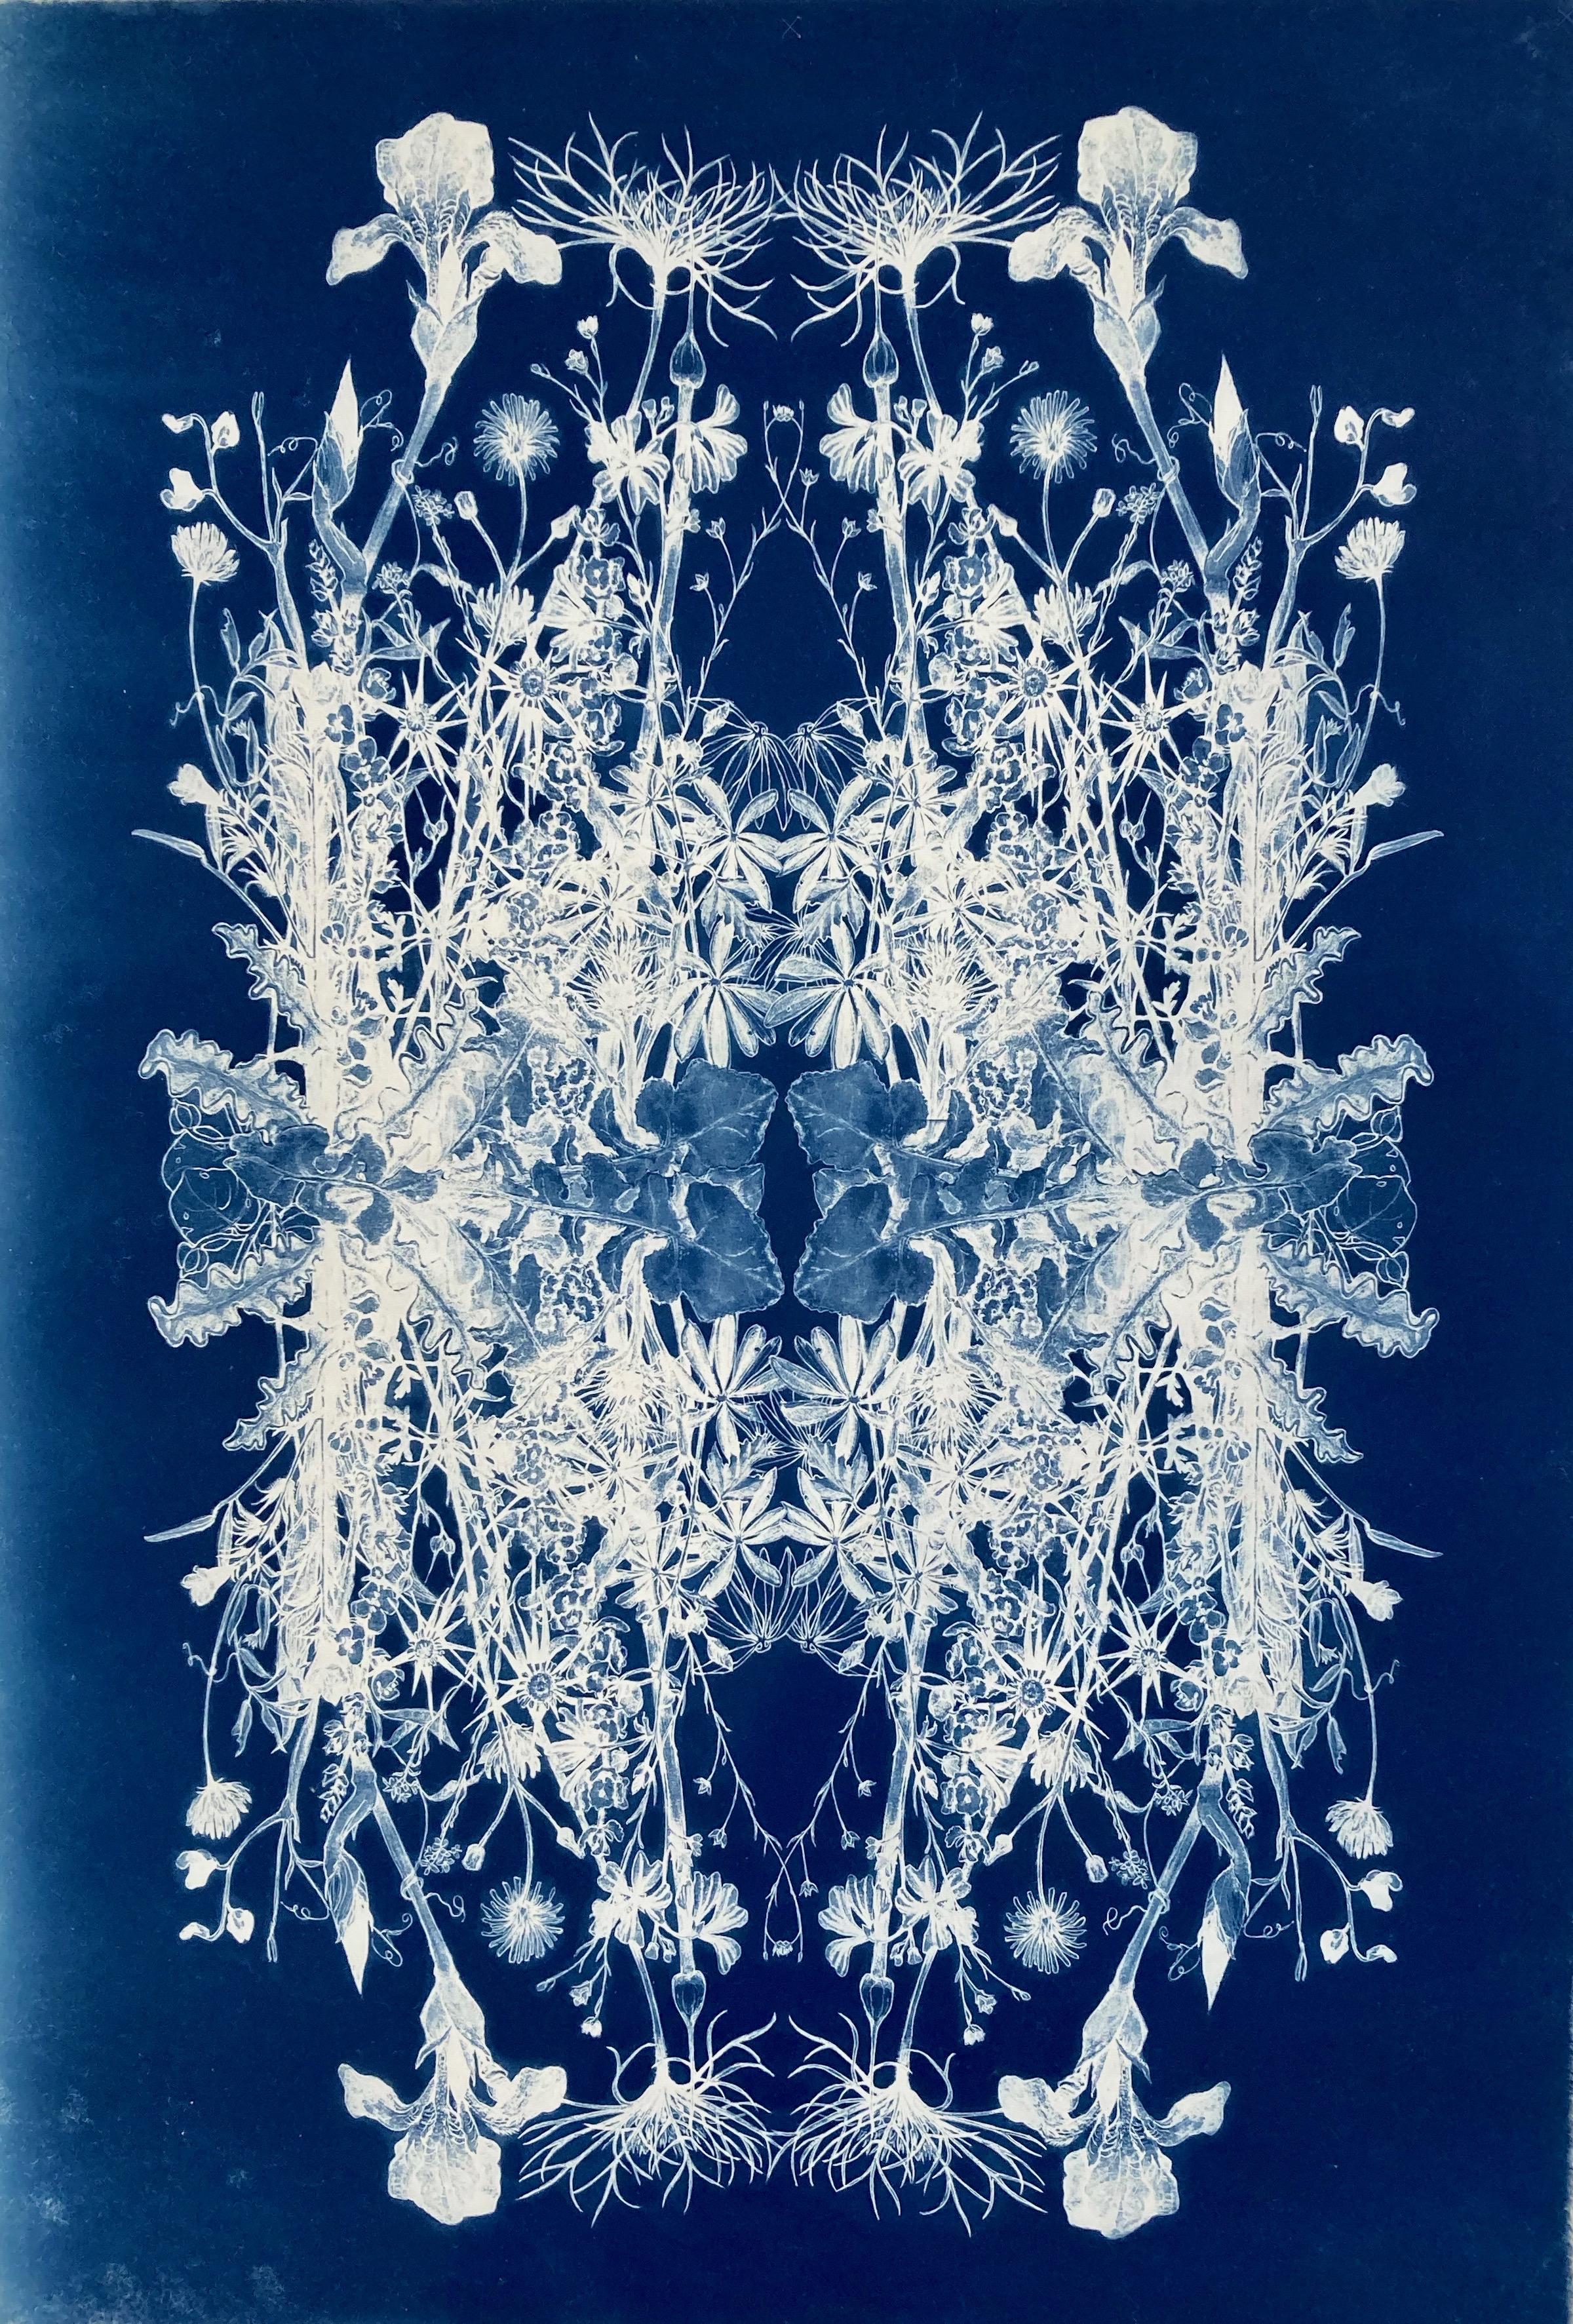 'Botanical Rhapsody'.   Photographie à motif floral réaliste/abstraite bleu/blanc  